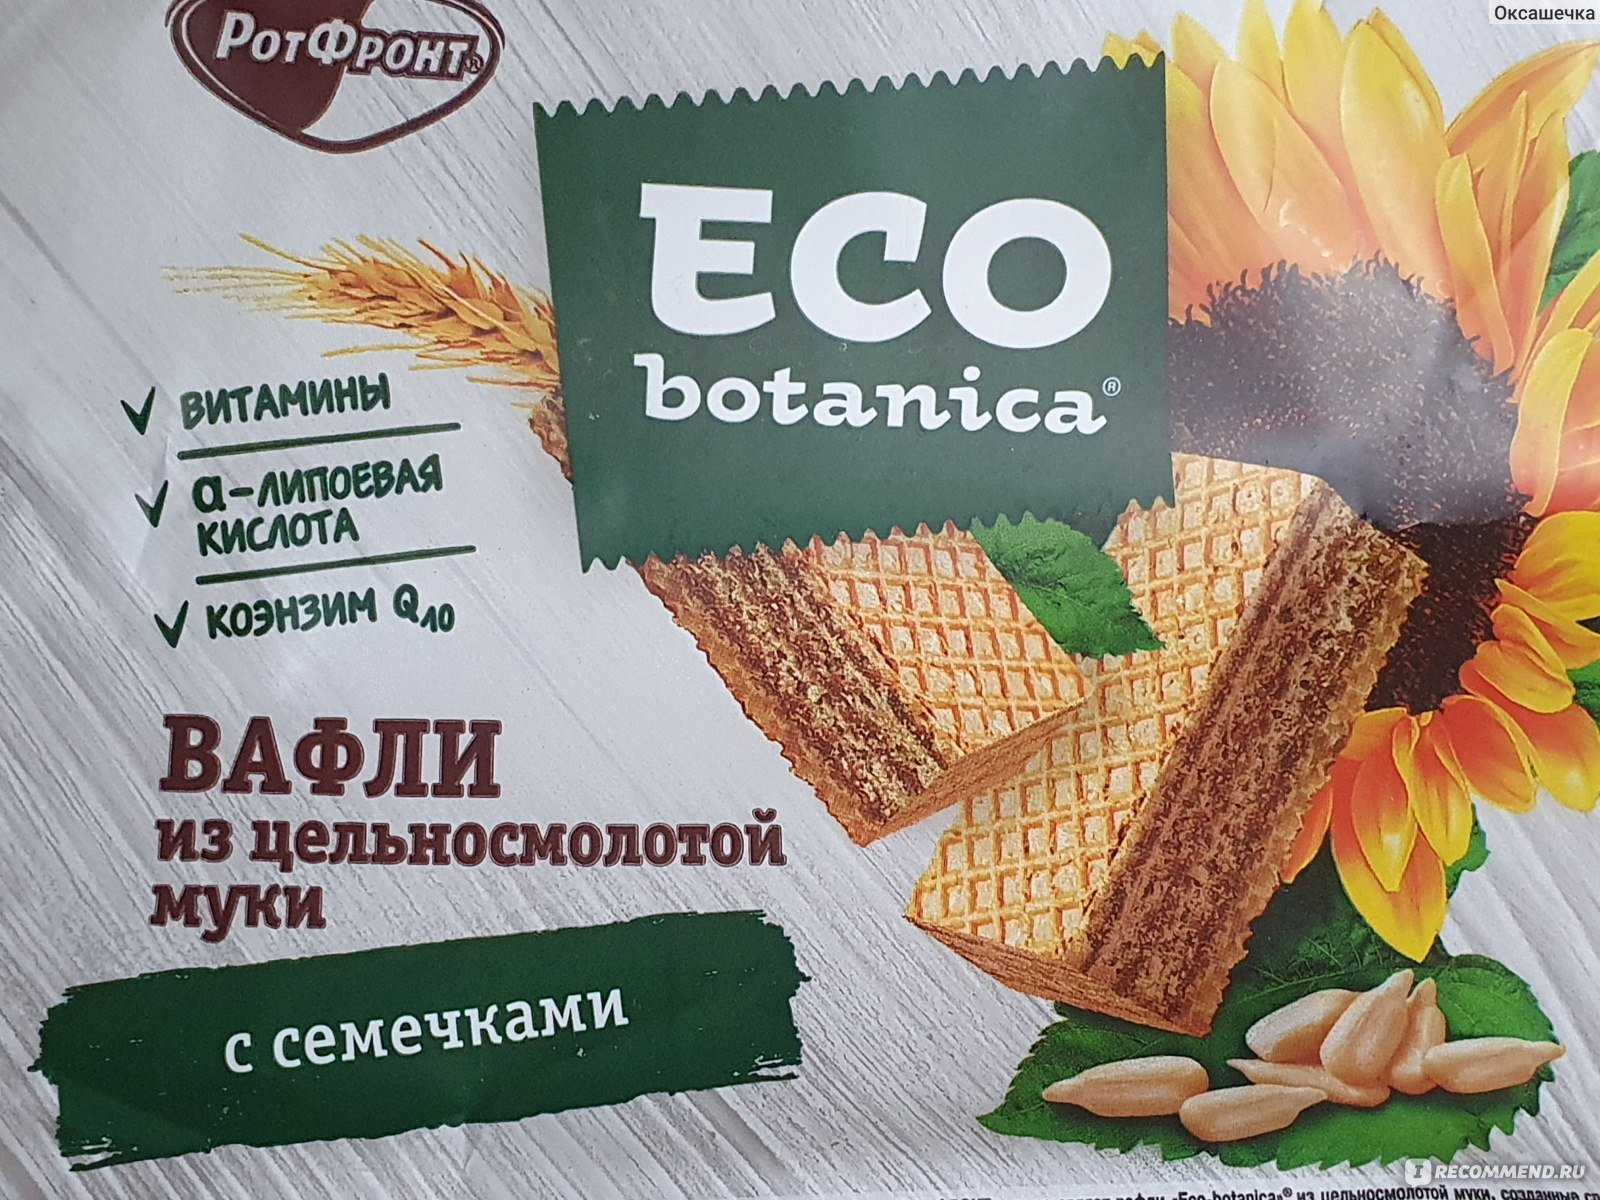 Эко ботаник хлебцы с творожным. Eco Botanica вафли. Eco Botanica хлебцы вафельные. Eco Botanica вафли с семечками. Вафли Eco с семечками.